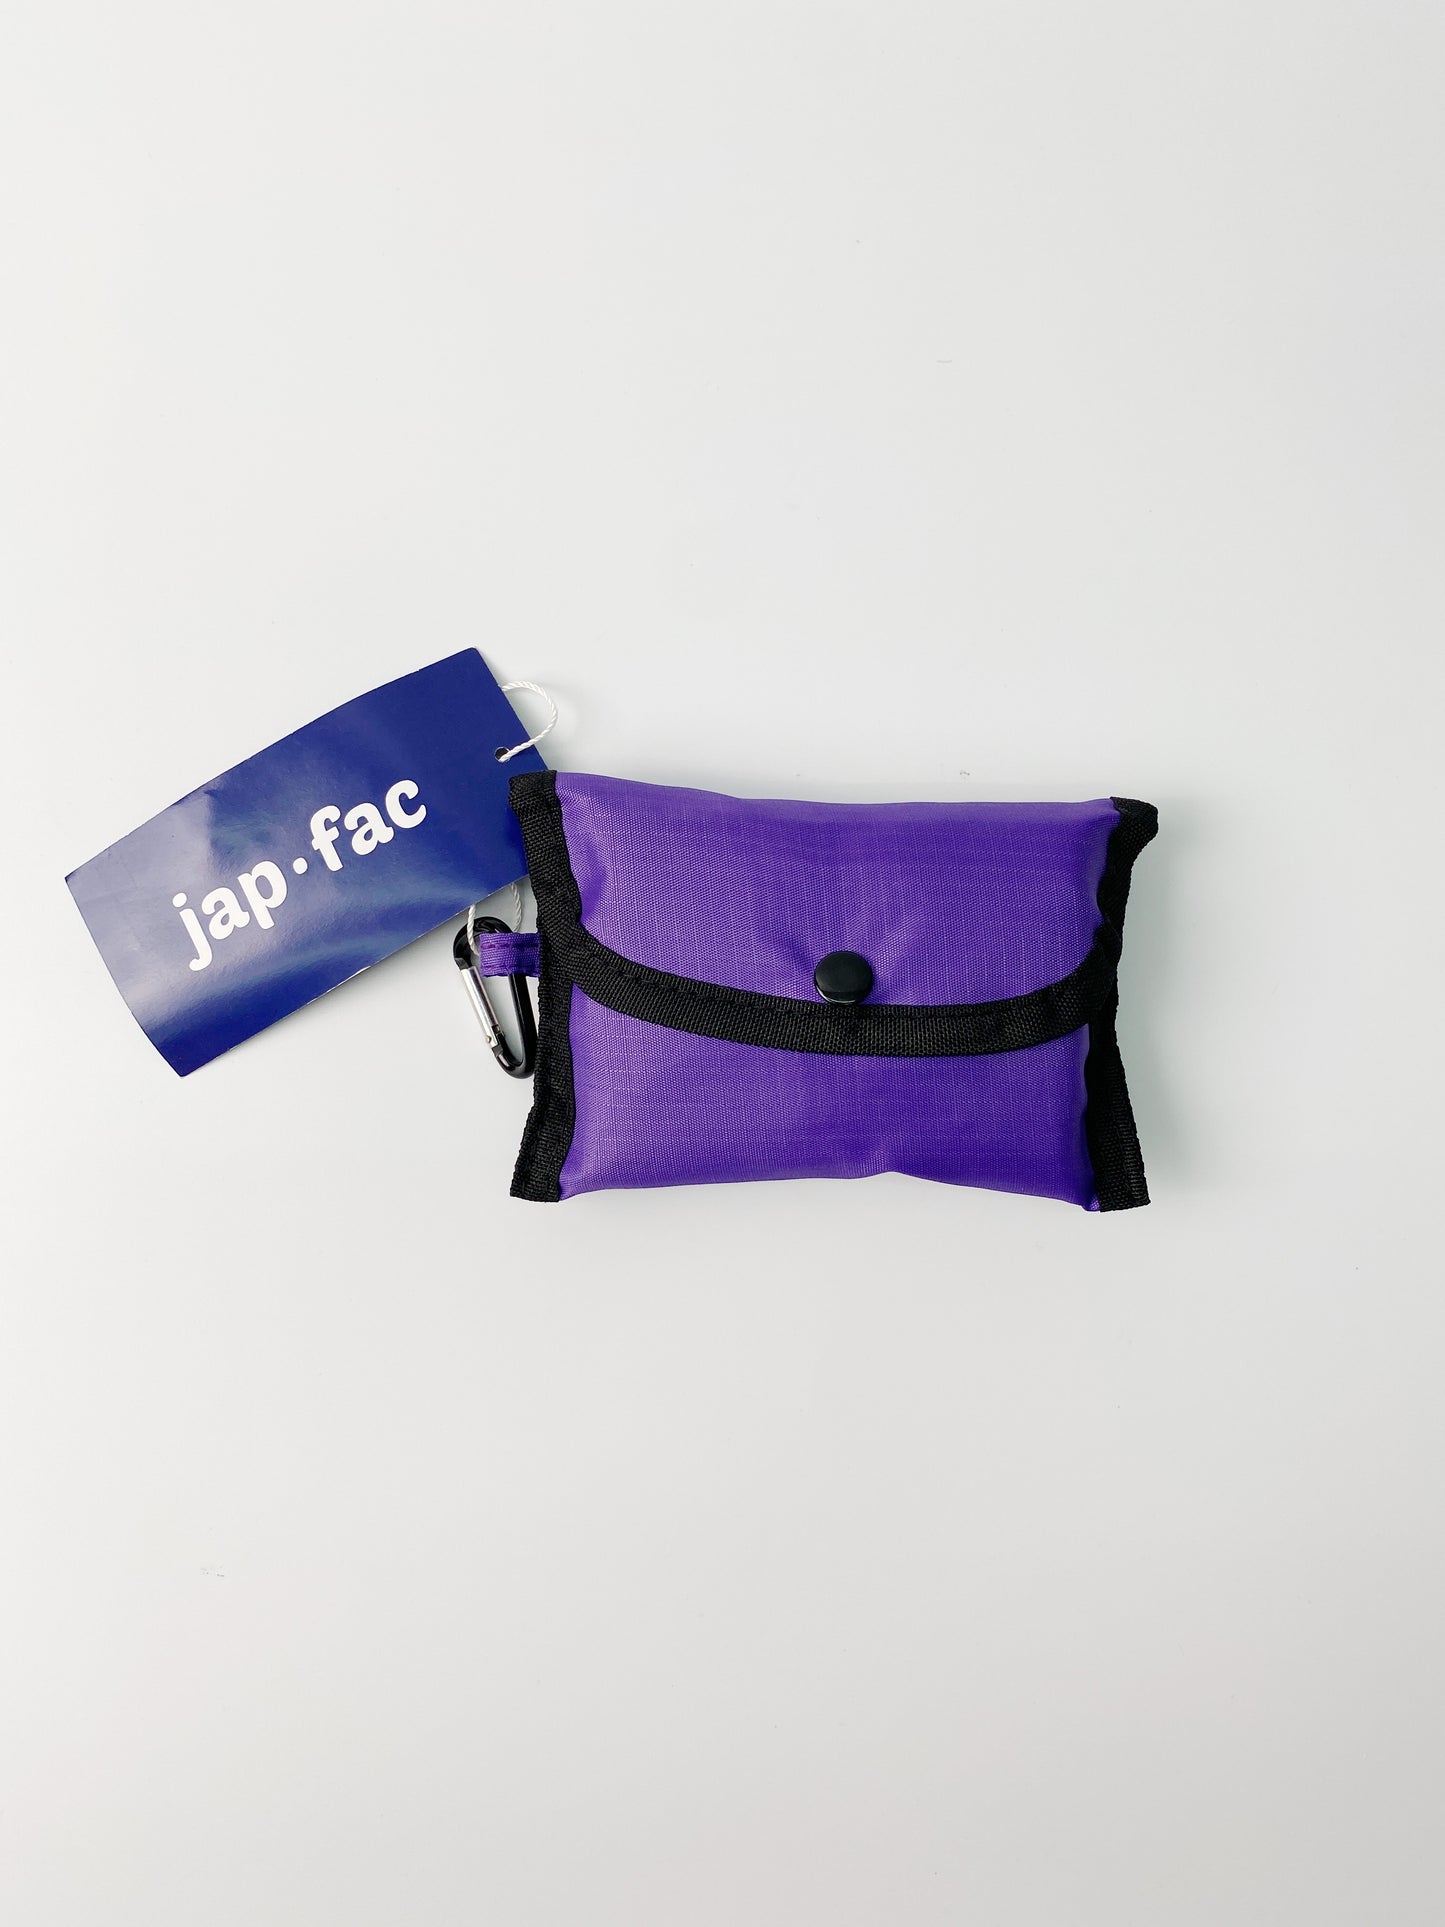 Japfac Choppy Bag (Purple)